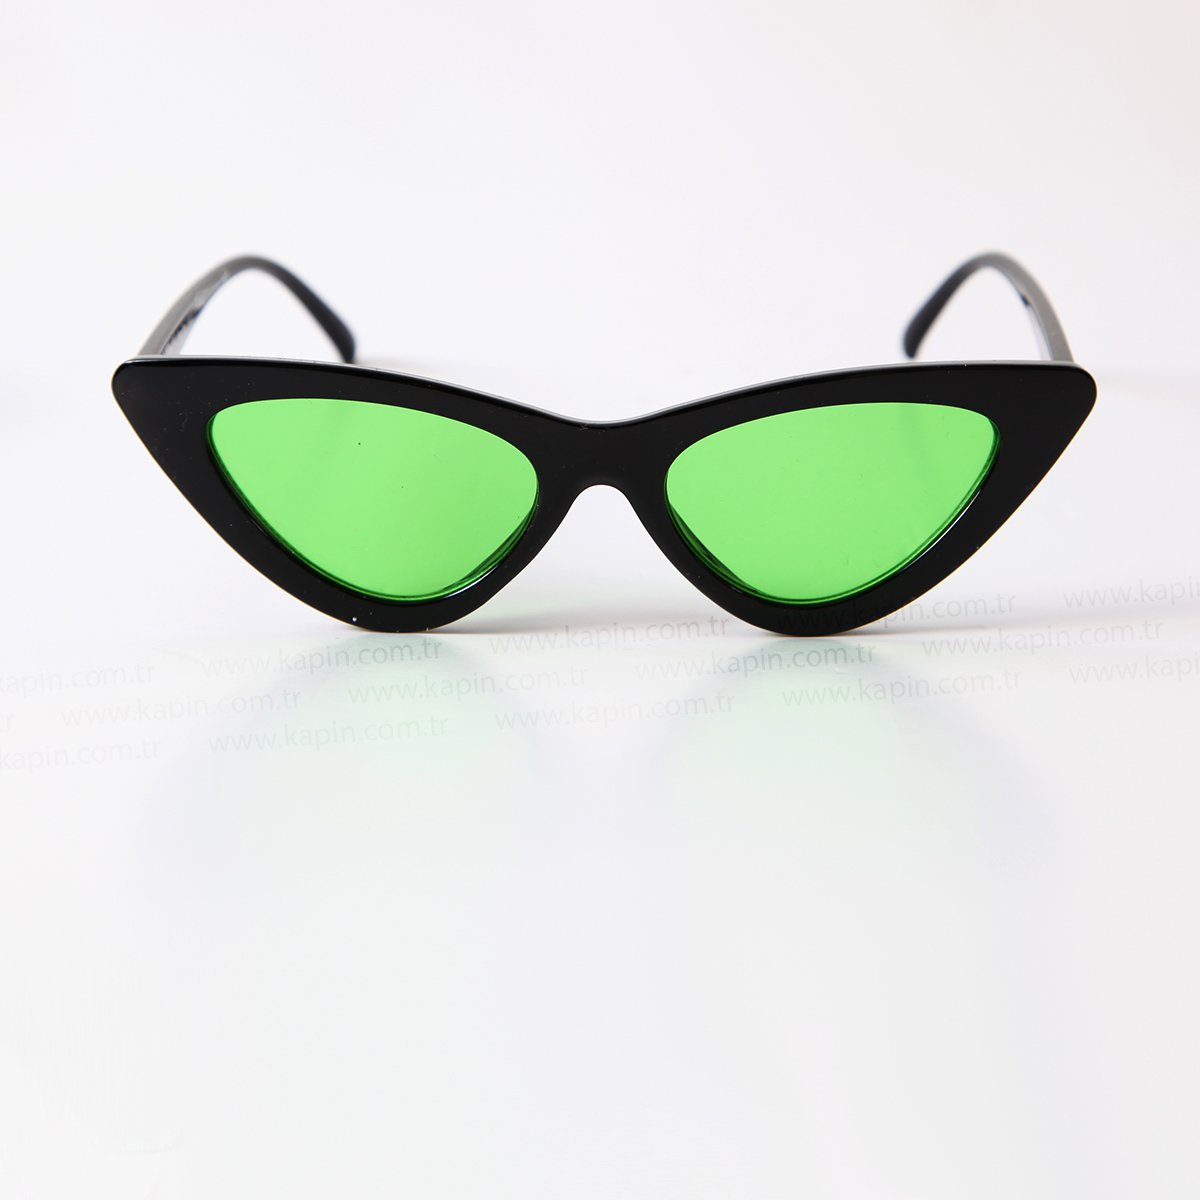 Kapin Kedi Model Güneş Gözlüğü Yeşil Şeffaf Cam Güneş Gözlüğü İmaj